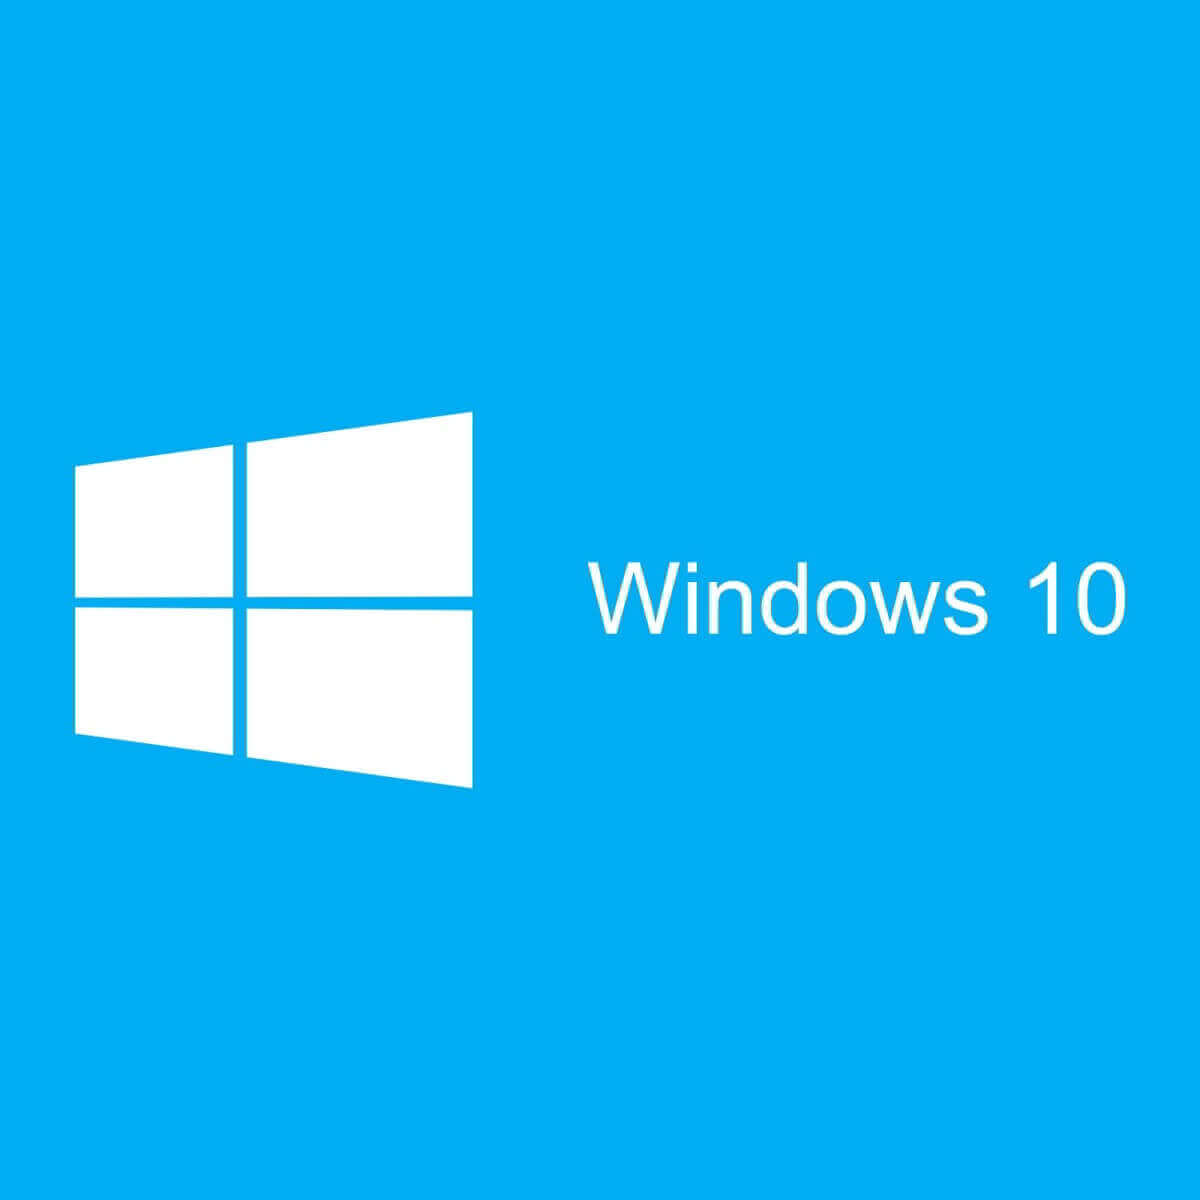 Windows 10 requiere que introduzcas tus credenciales de red[MEJORES SOLUCIONES]